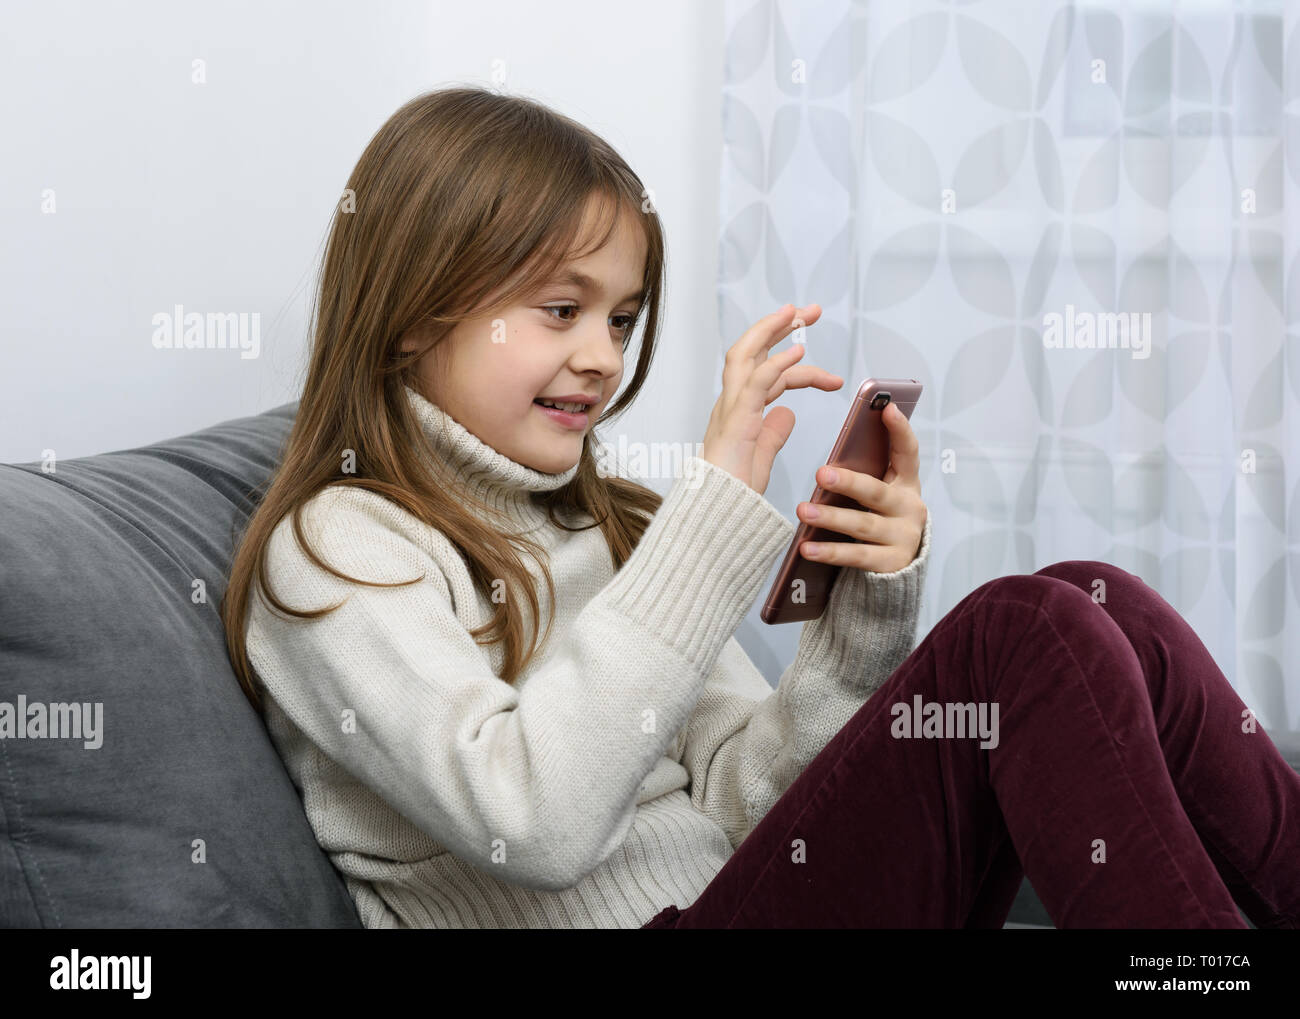 Das junge Mädchen zeigt einen Zeigefinger in ein Smartphone. Stockfoto